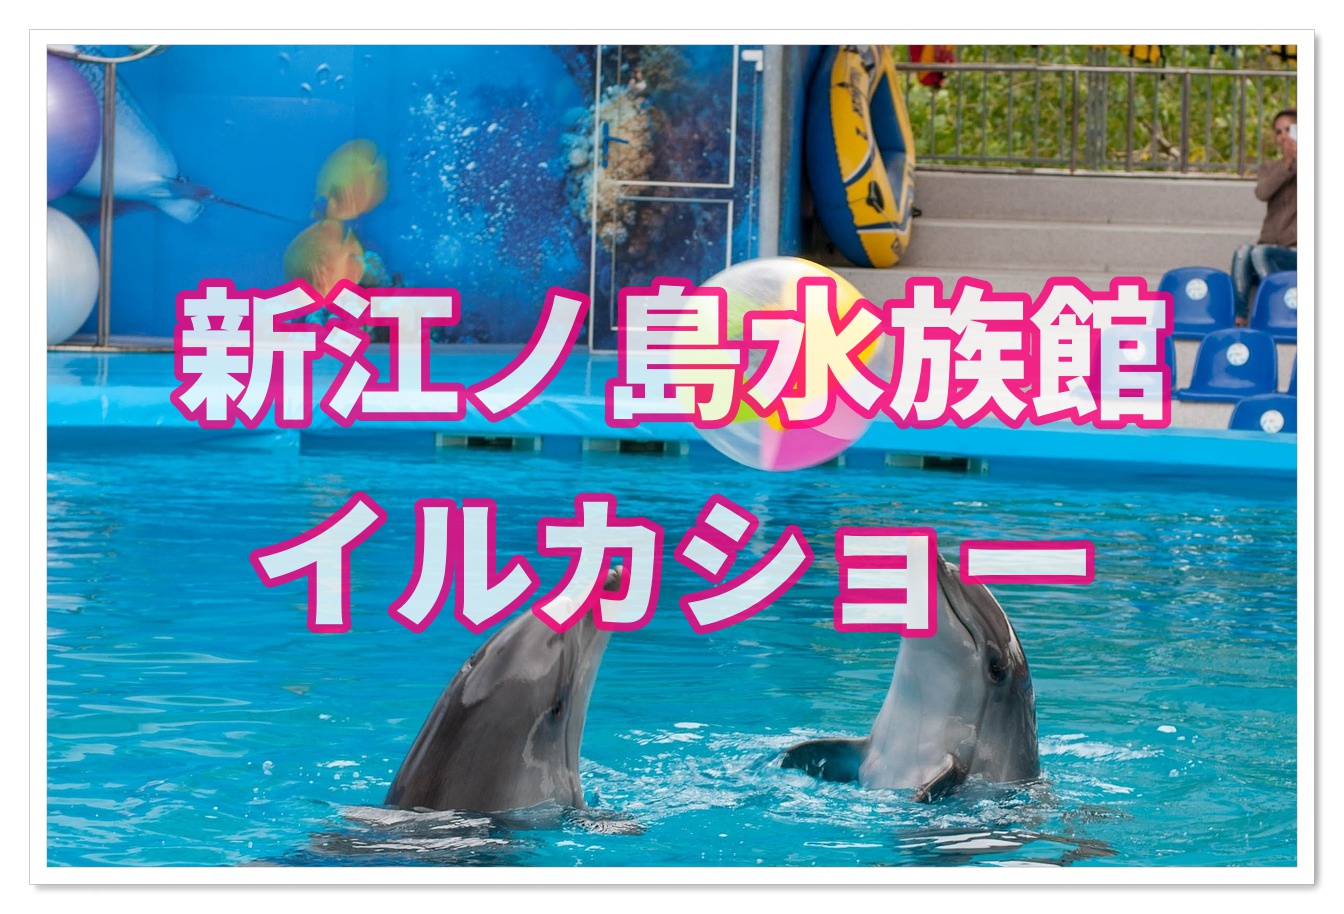 新江ノ島水族館のイルカショーがすごい おすすめはイルカと握手 子連れ旅行を楽しむ鉄板ブログ もう国内旅行は迷わせない